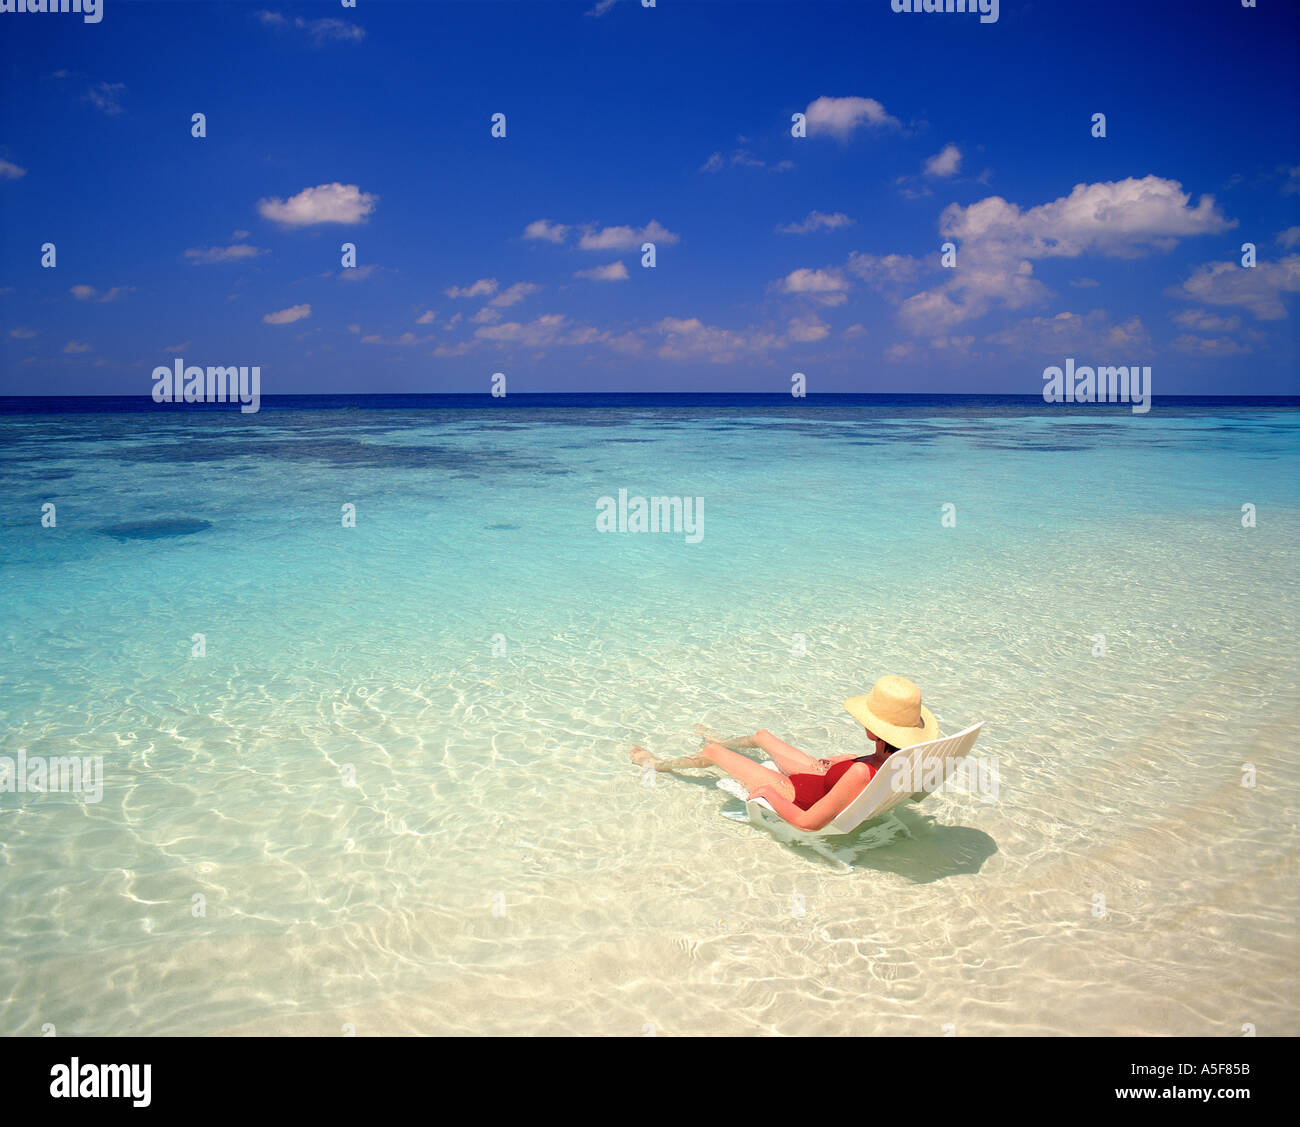 Frau sitzt auf dem Stuhl im flachen Wasser auf den Malediven  Stockfotografie - Alamy